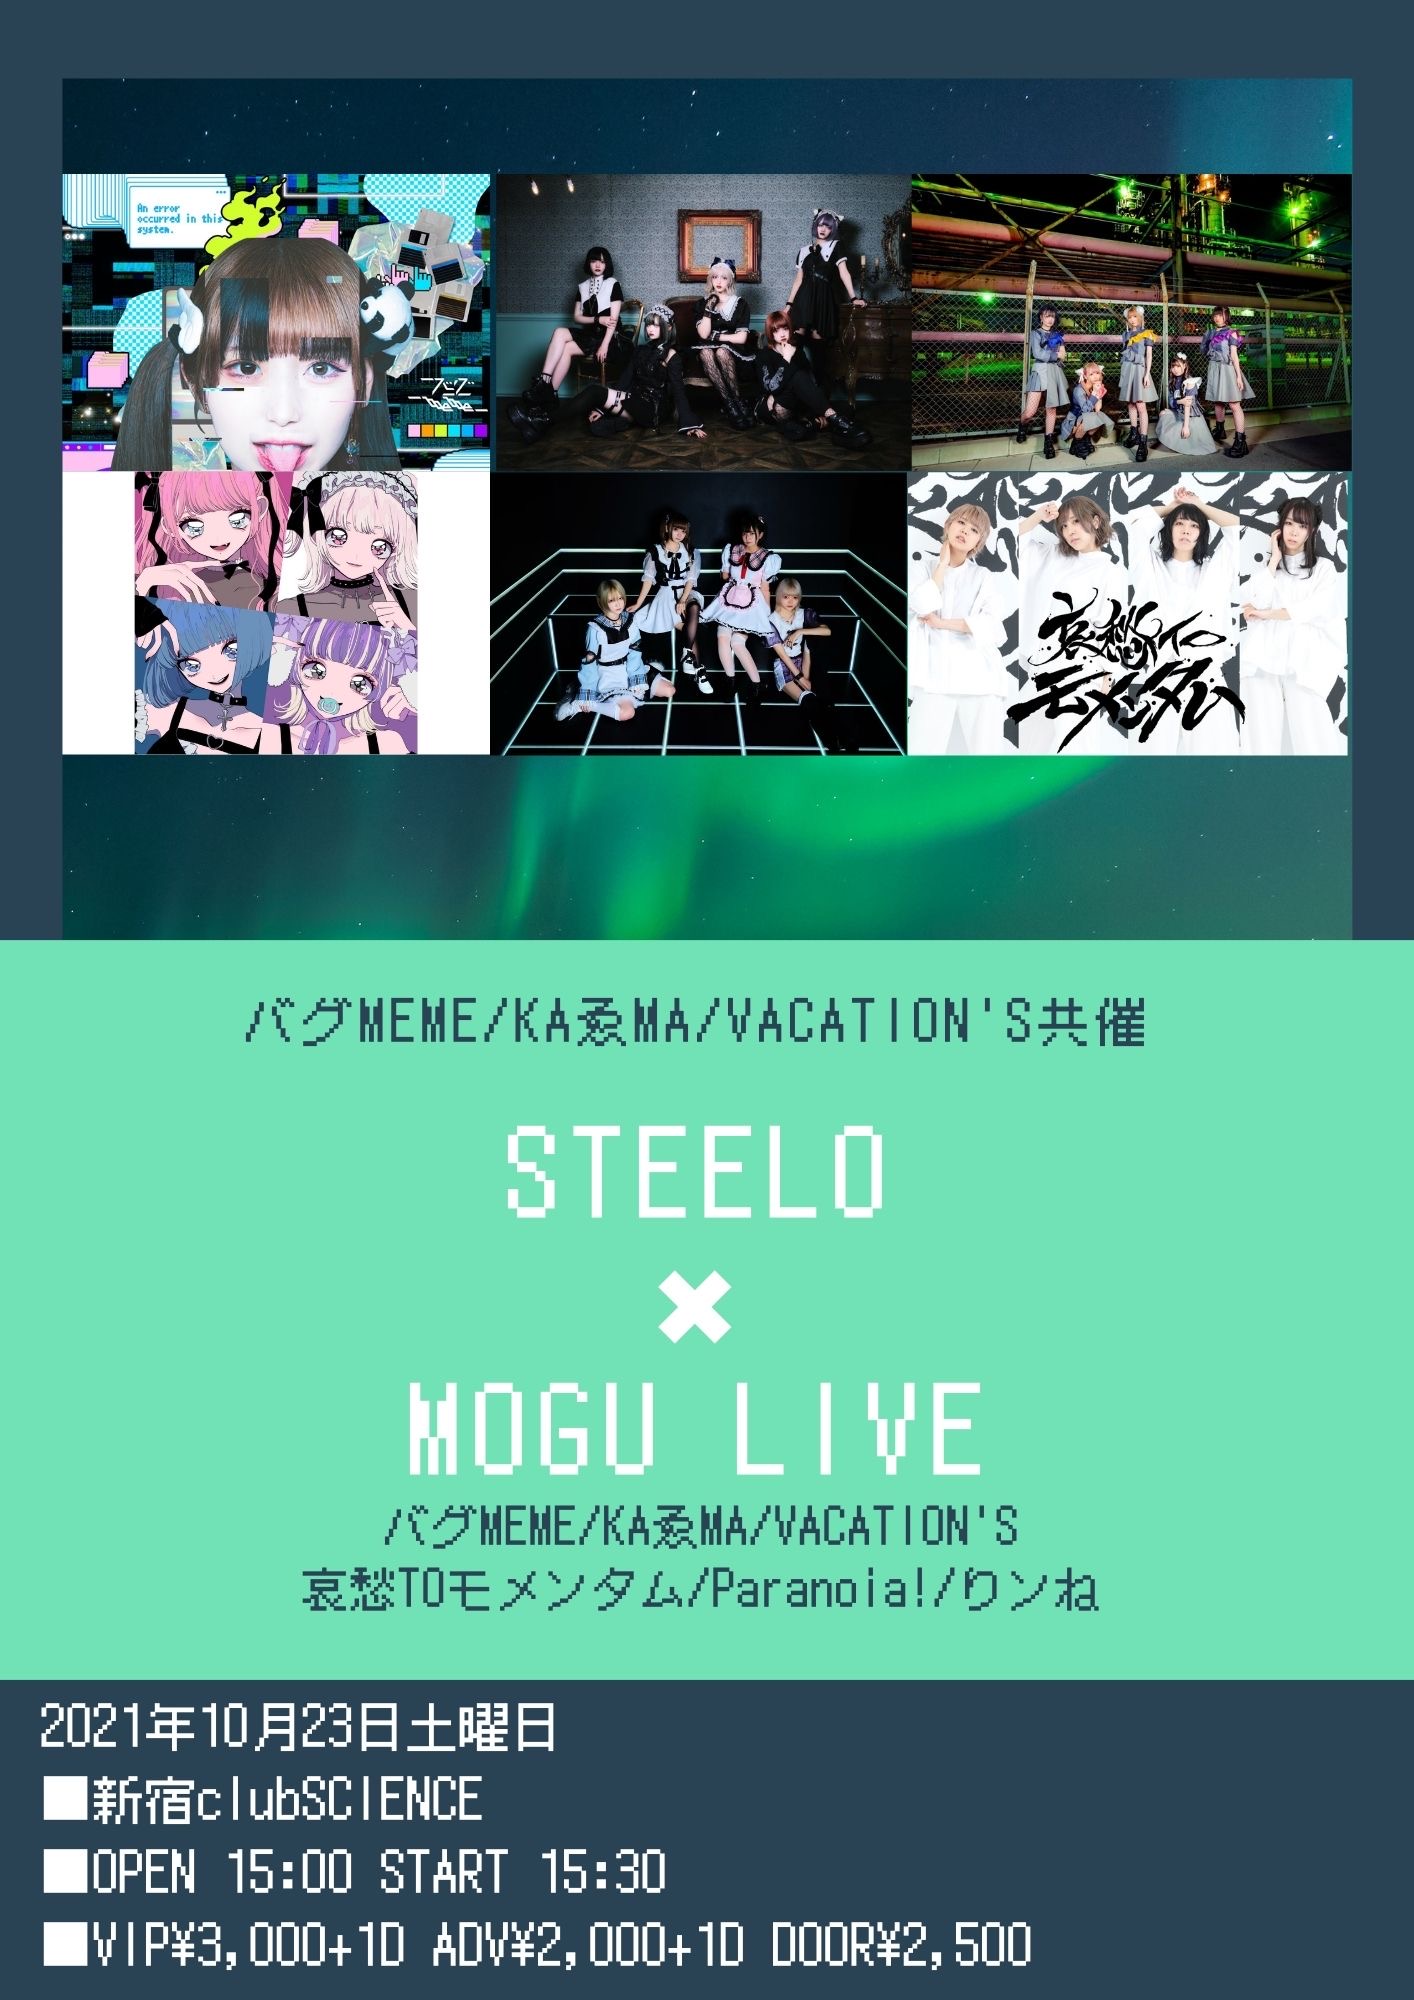 バグMEME、KAゑMA、VACATION'S共催「STEELO×MOGU LIVE」